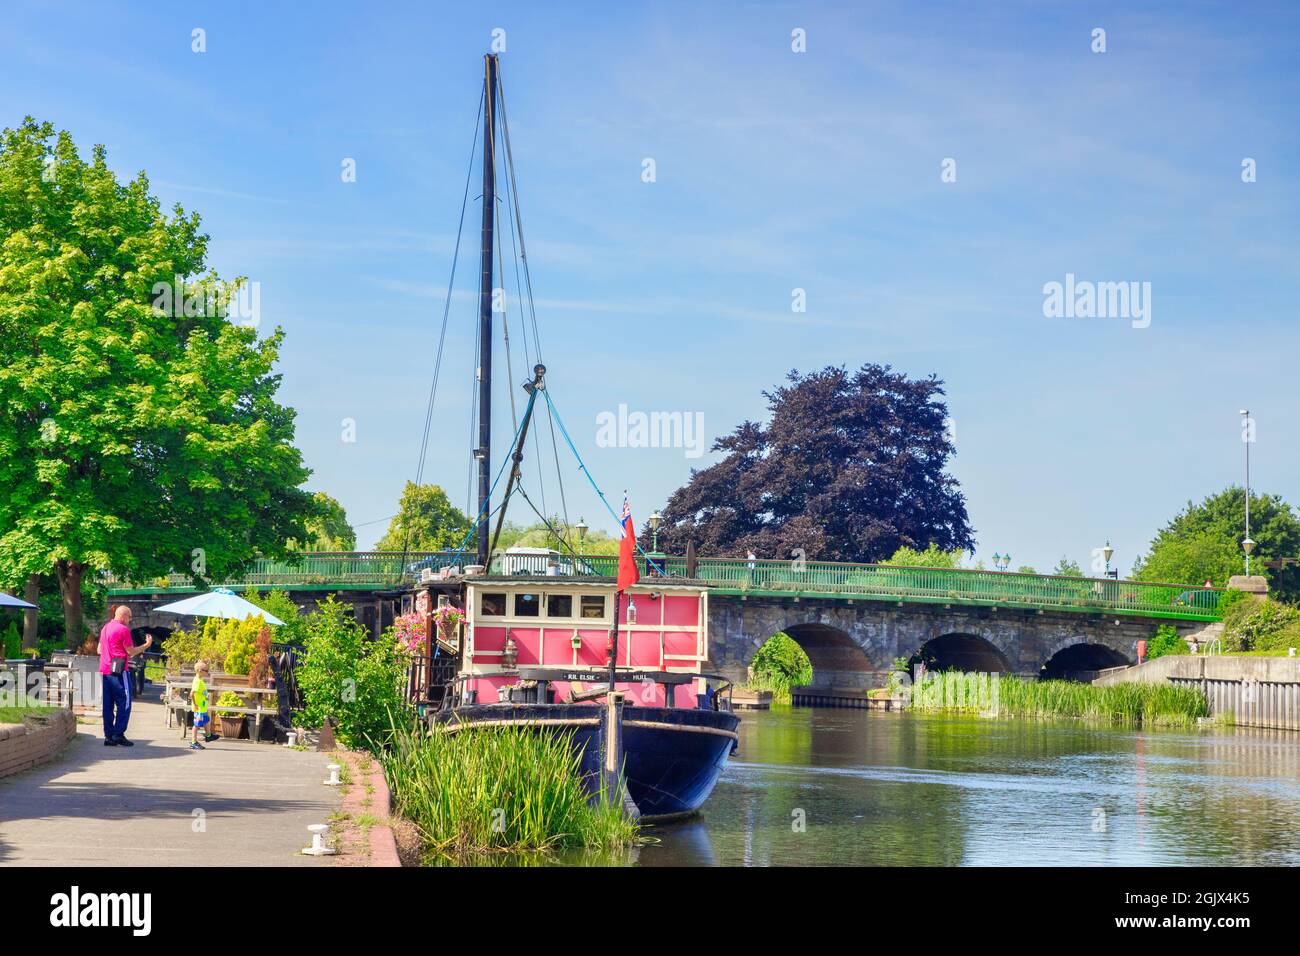 4 juillet 2019 : Newark on Trent, Notinghamshire, Royaume-Uni - The Castle Barge, célèbre pub flottant, amarré sur la rivière Trent. Homme et garçon regardant le bateau. Banque D'Images